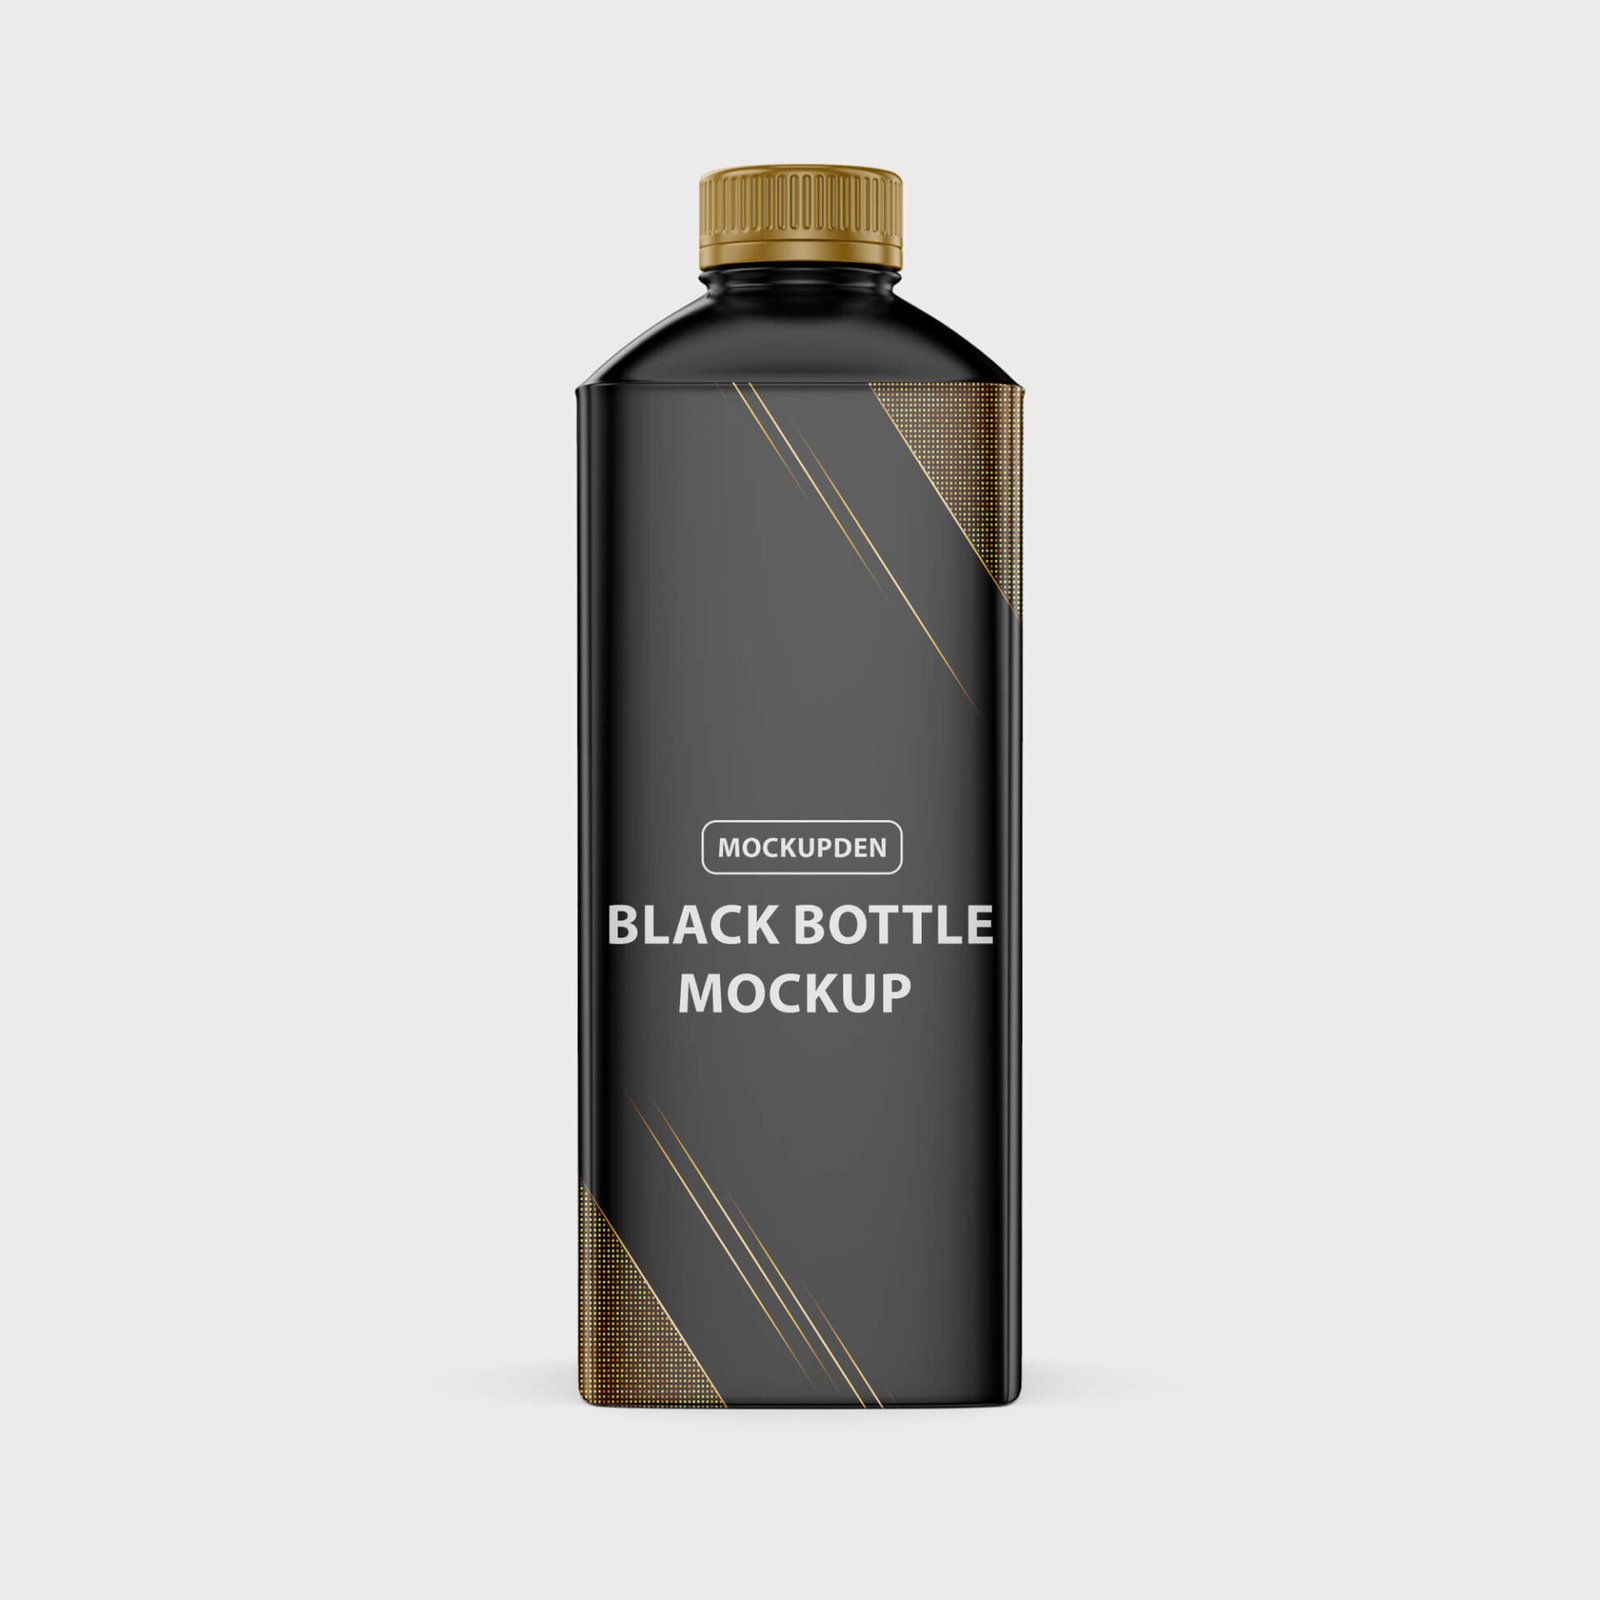 Free Black Bottle Mockup PSD Template - Mockup Den